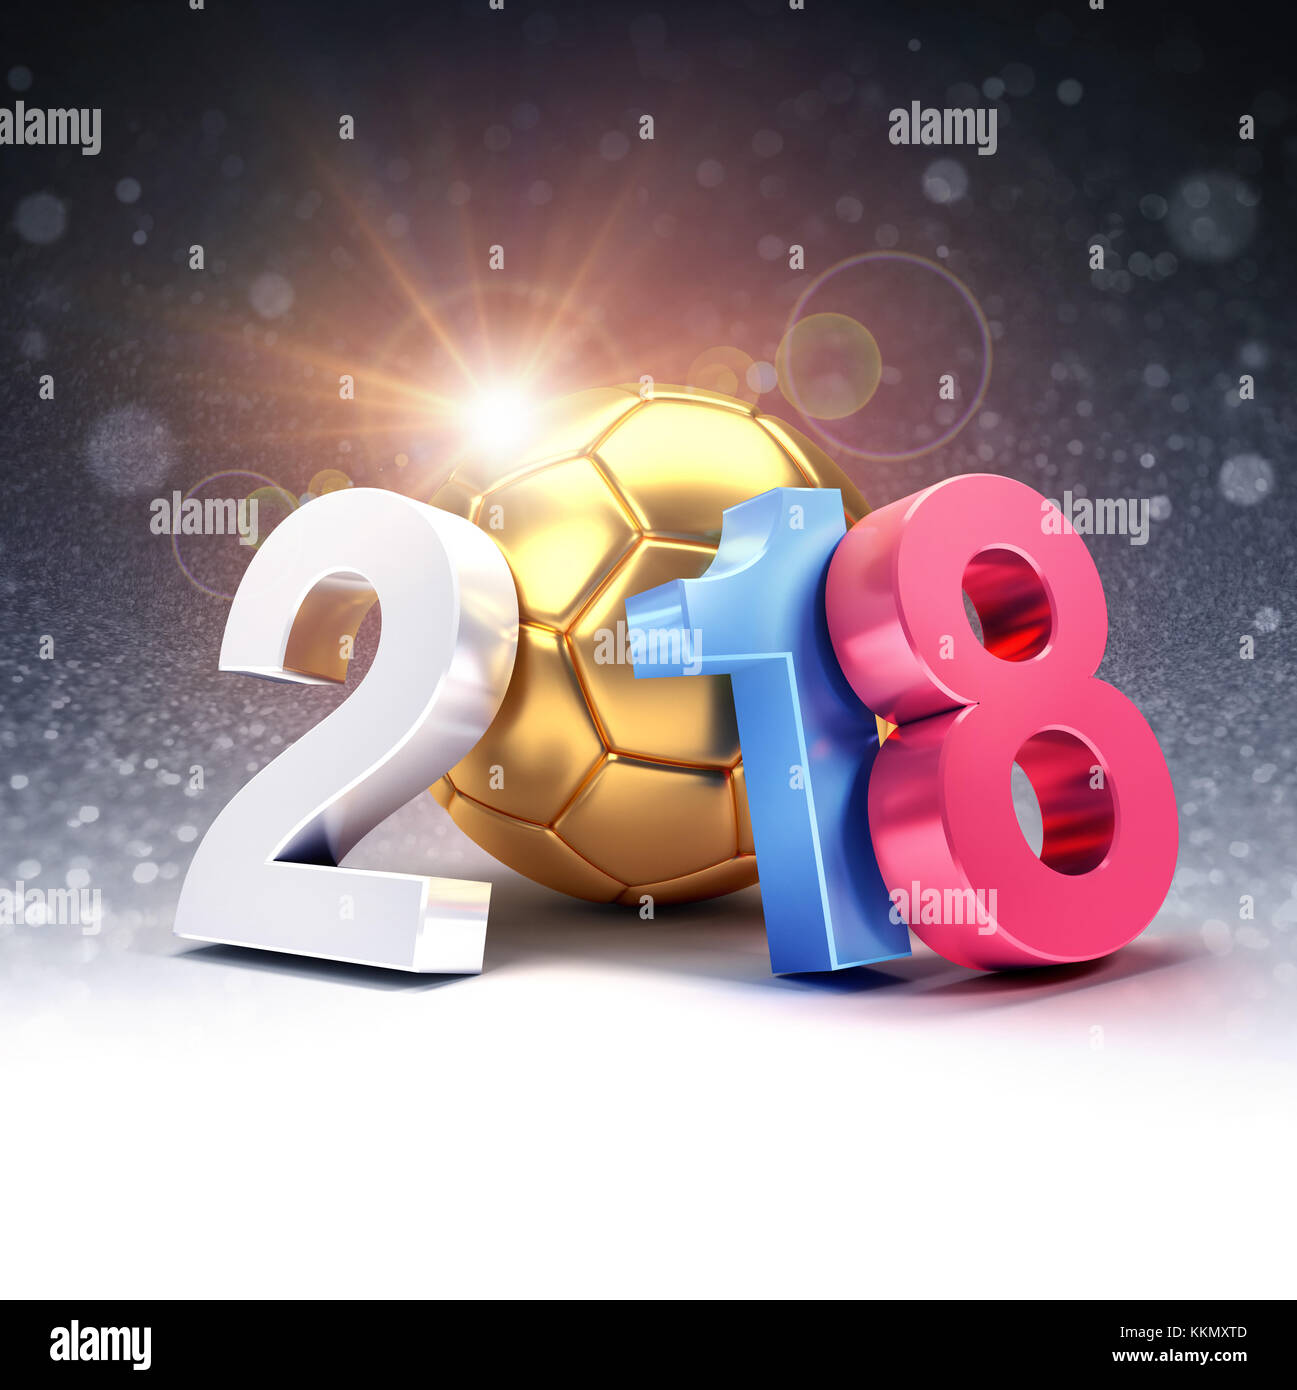 Jahr 2018, komponiert mit einem gold Fußball scheint auf glitzernden schwarzen Hintergrund. 2018 internationale Fußball-Event. 3D-Darstellung Stockfoto